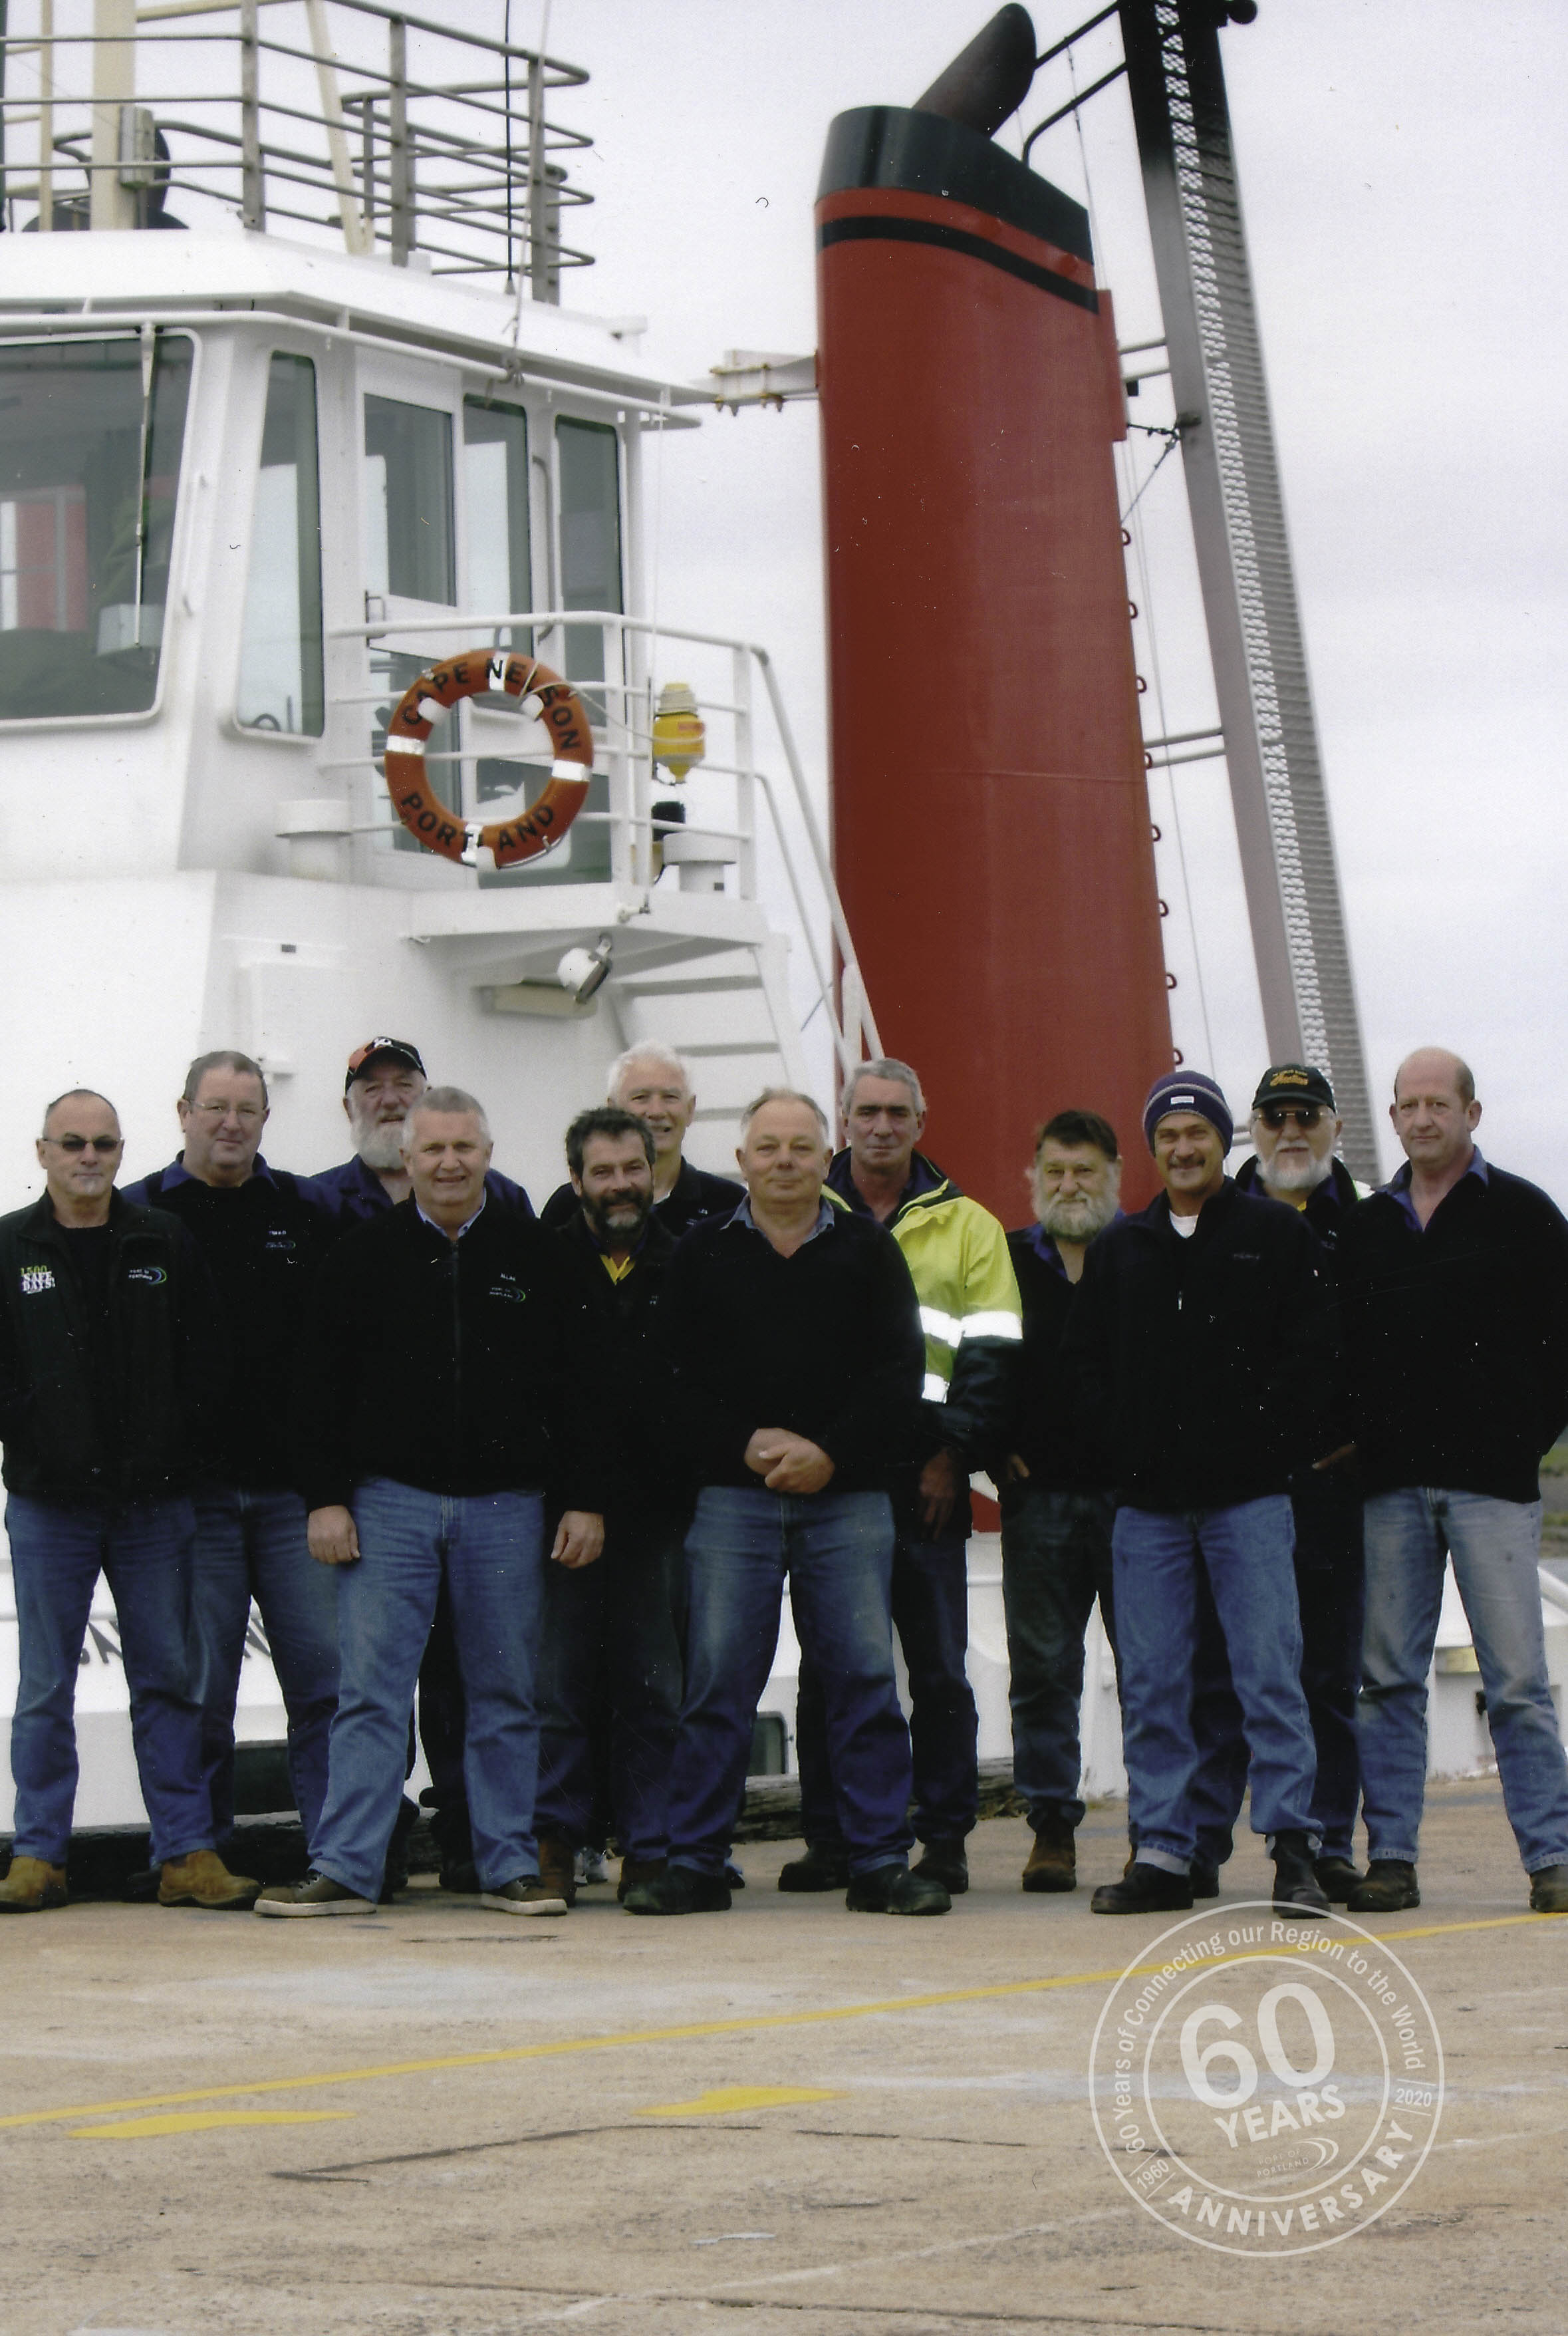 Towage Team: Bill, Tekko, Ken, Allan, Anthony, Les, Henry, Graham, Fred, Garry, Paul & Ross.